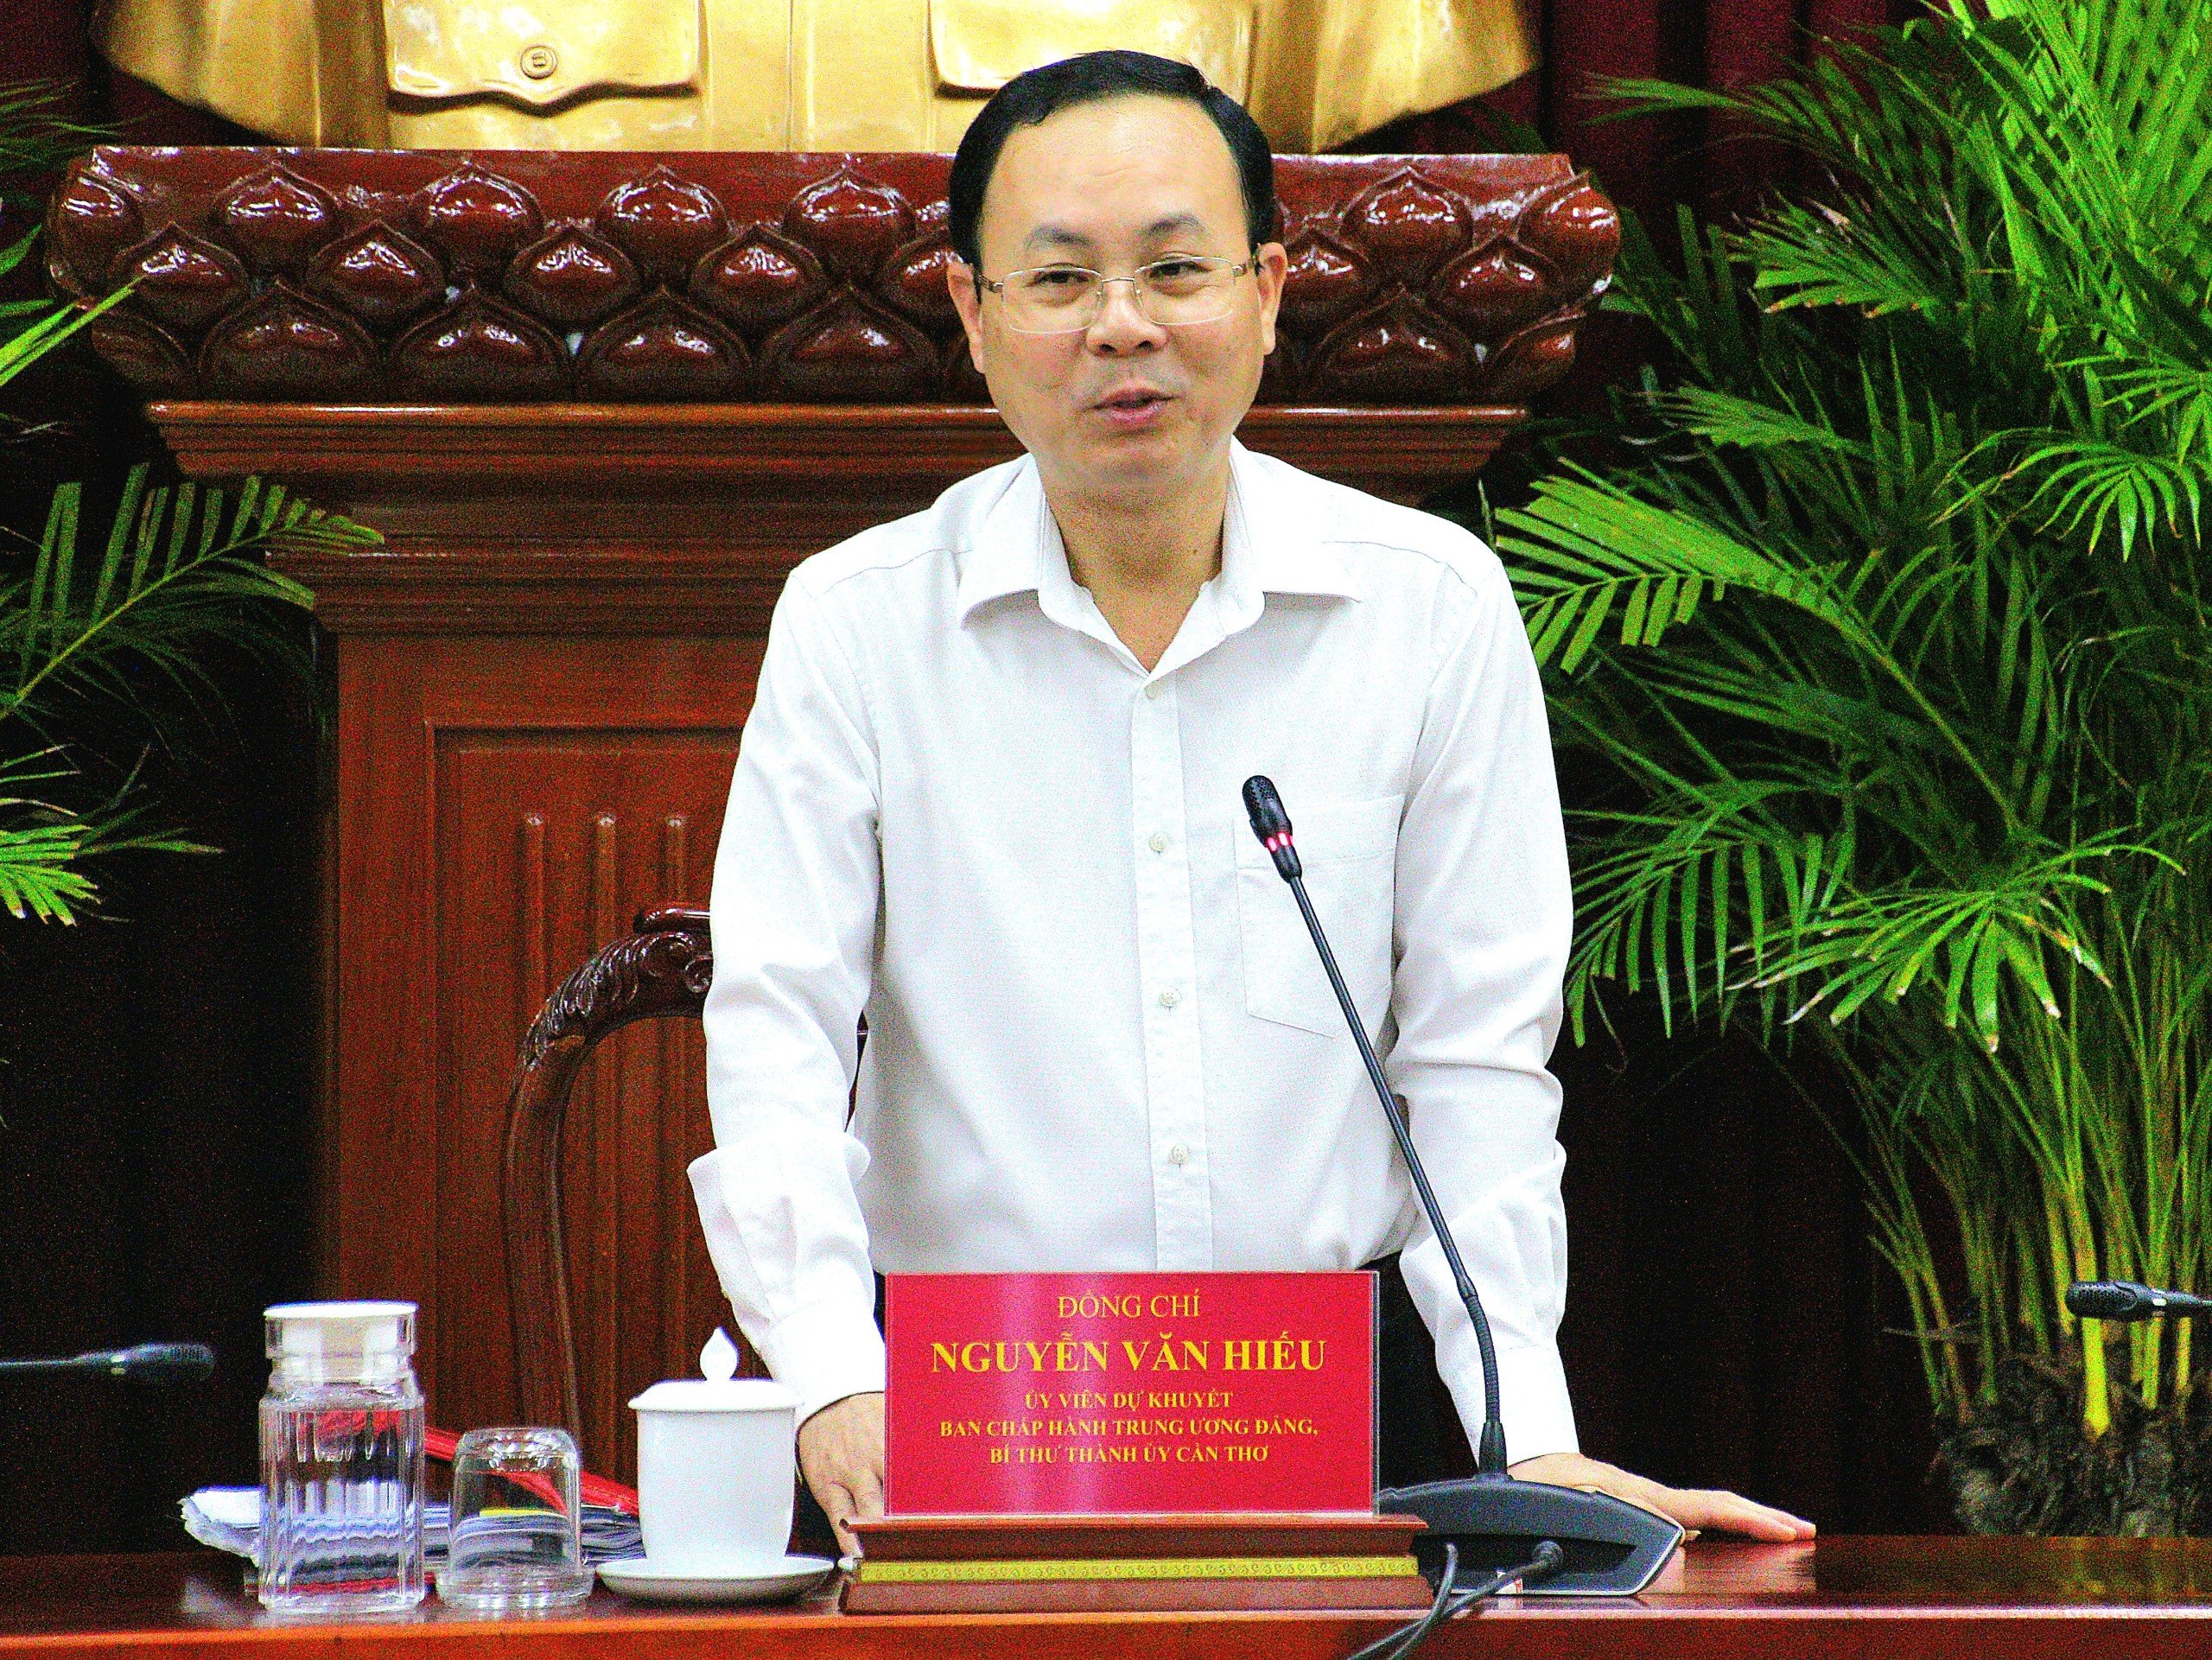 Ông Nguyễn Văn Hiếu - Ủy viên dự khuyết BCH Trung ương Đảng, Bí thư Thành ủy Cần Thơ phát biểu chỉ đạo tại buổi lễ.